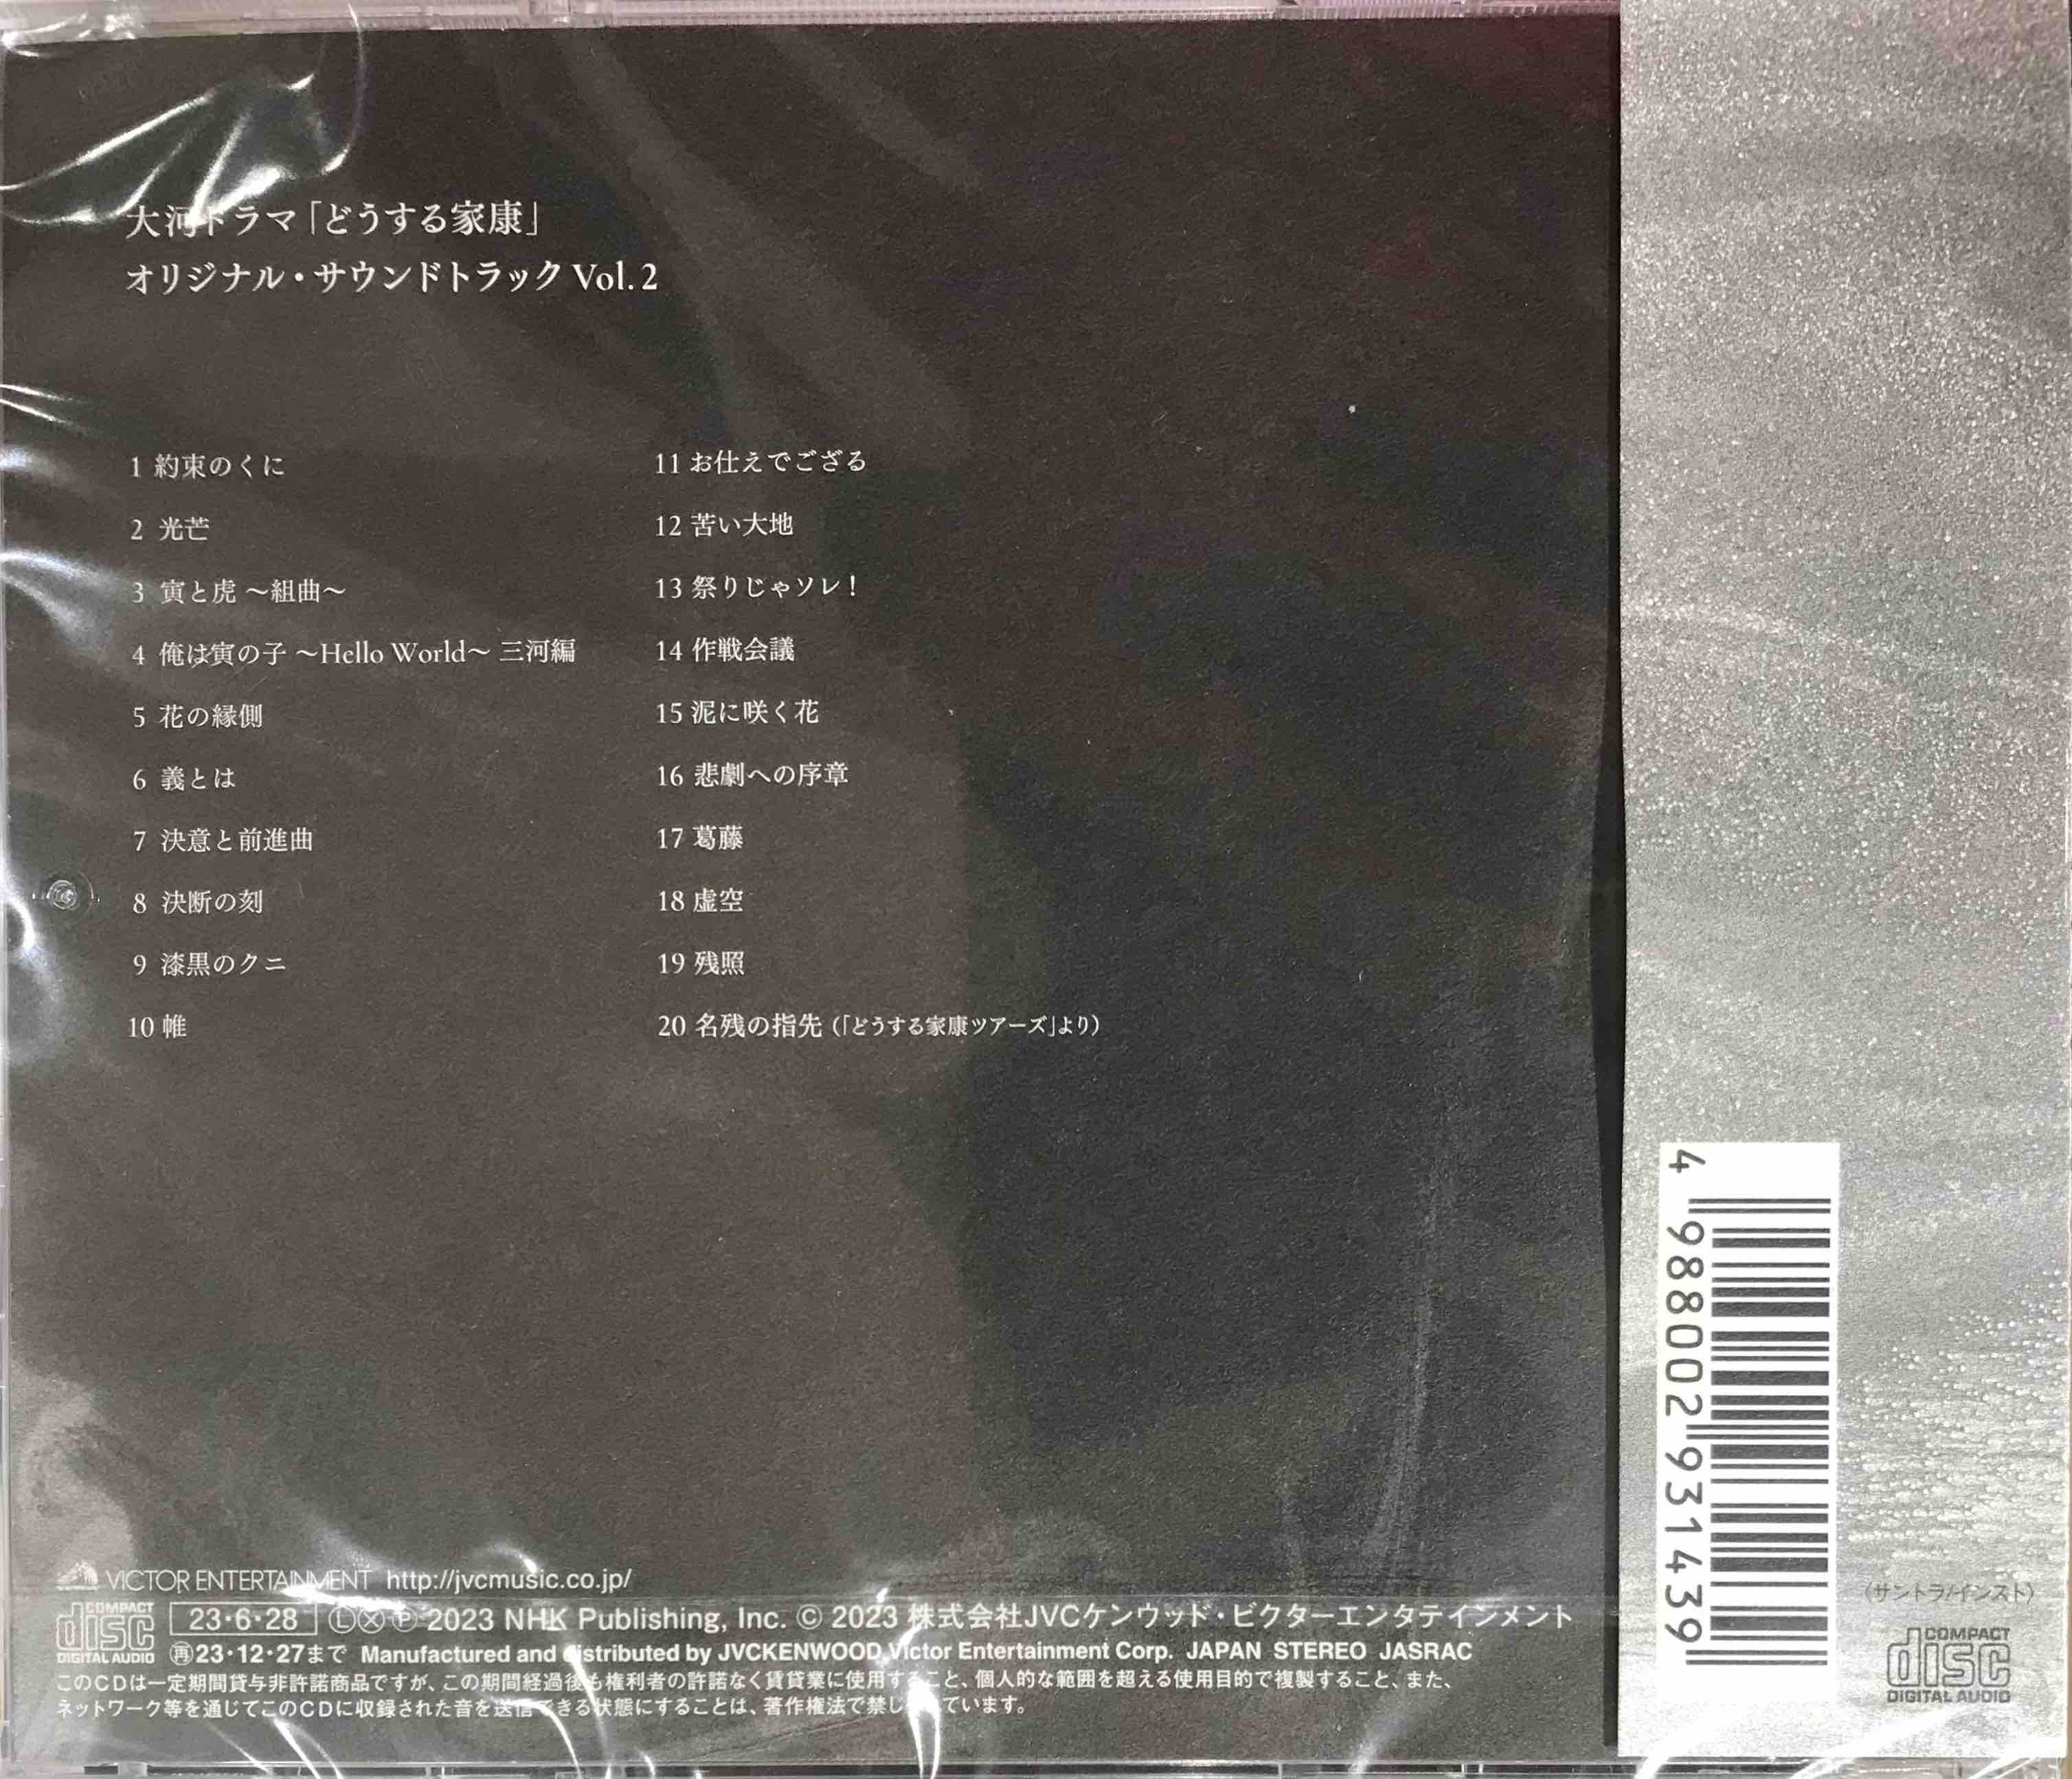 稲本響 - 大河ドラマ「どうする家康」オリジナル・サウンドトラック Vol.2